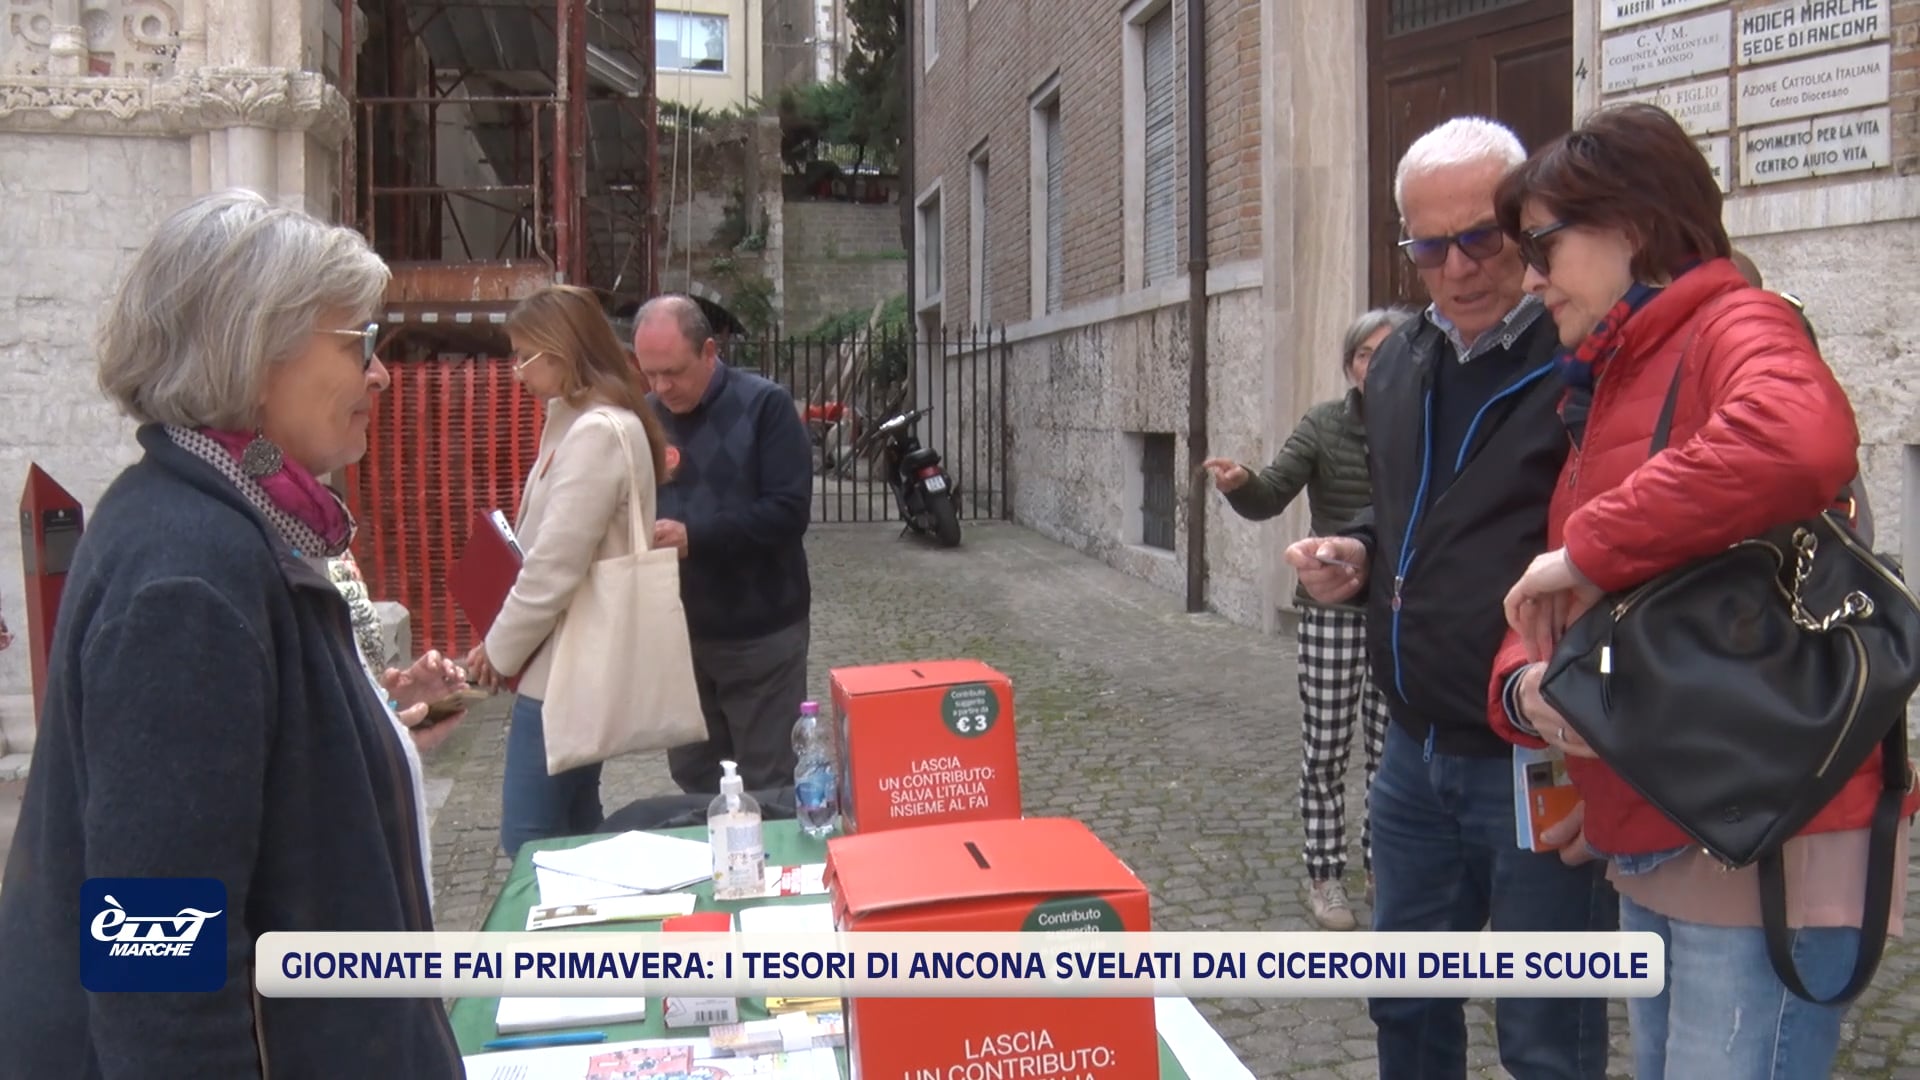 Giornate Fai di Primavera: i tesori di Ancona svelati dai ciceroni delle scuole  - VIDEO